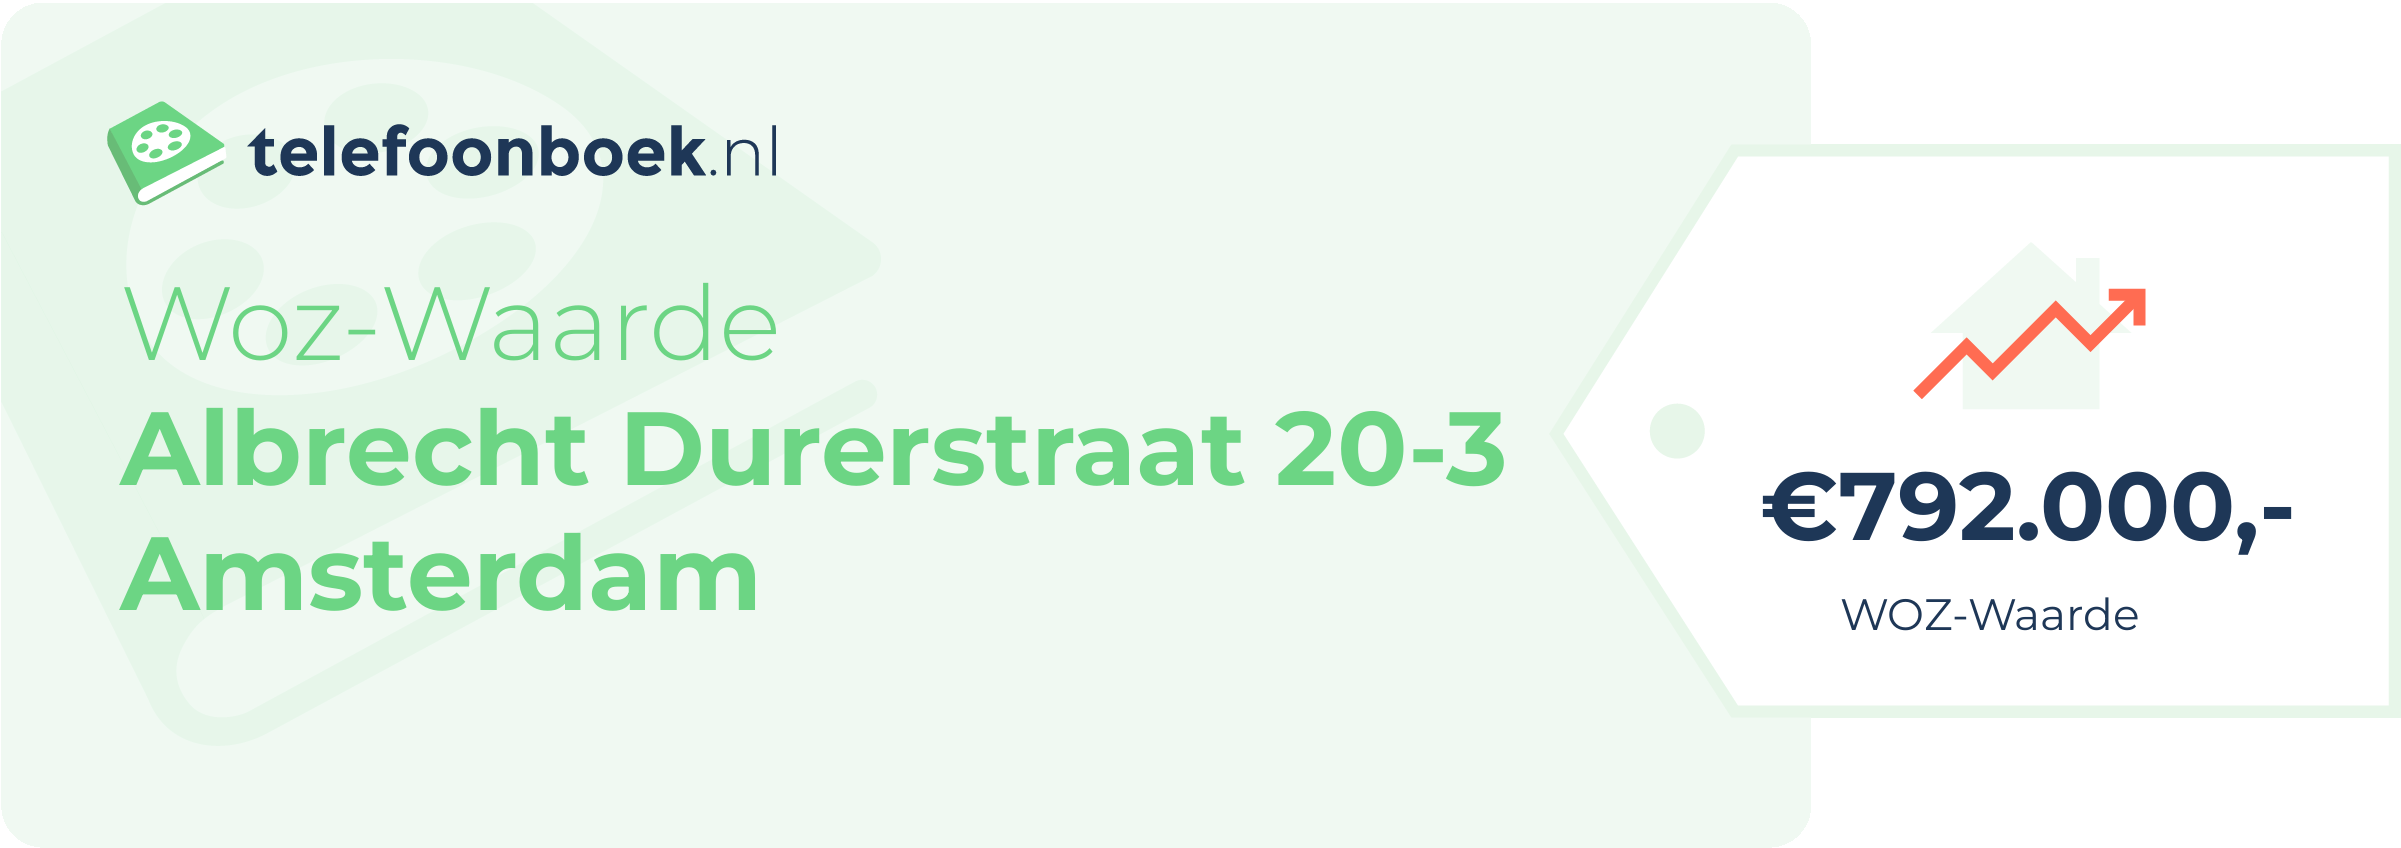 WOZ-waarde Albrecht Durerstraat 20-3 Amsterdam